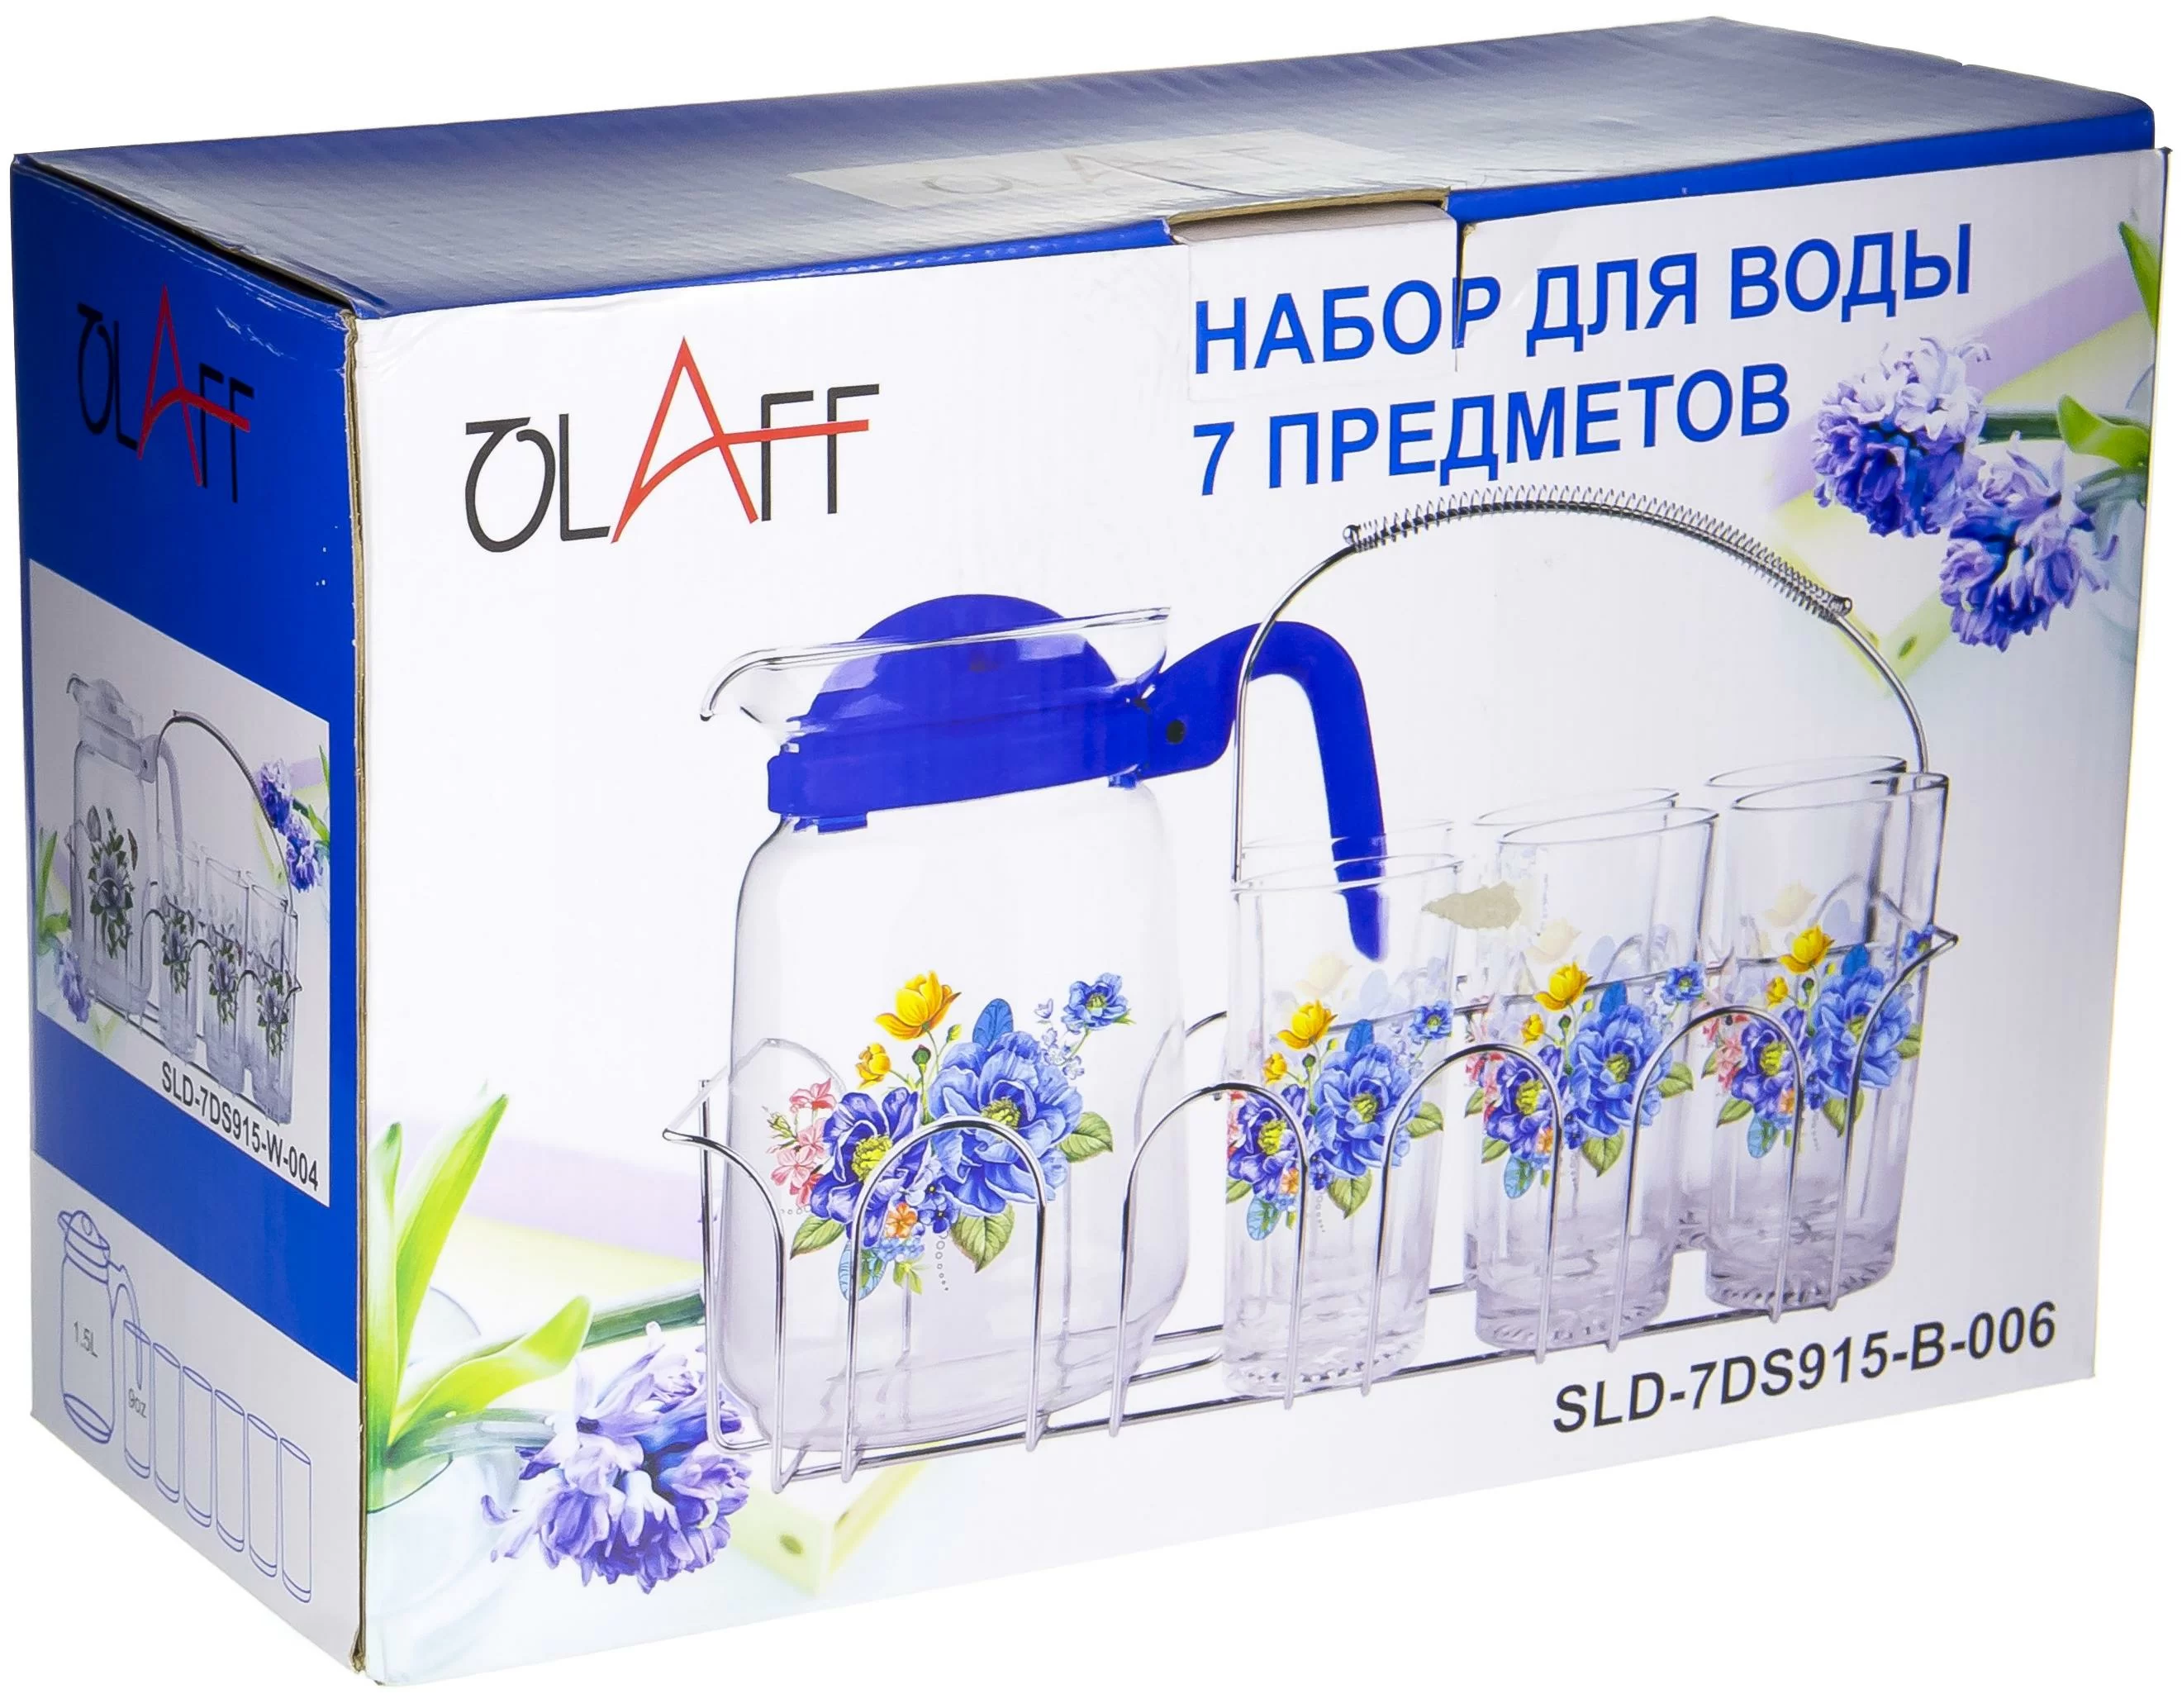 Набор для воды Olaff кувшин и 6 стаканов на металлической подставке 7 предметов sld-7ds915-r-002